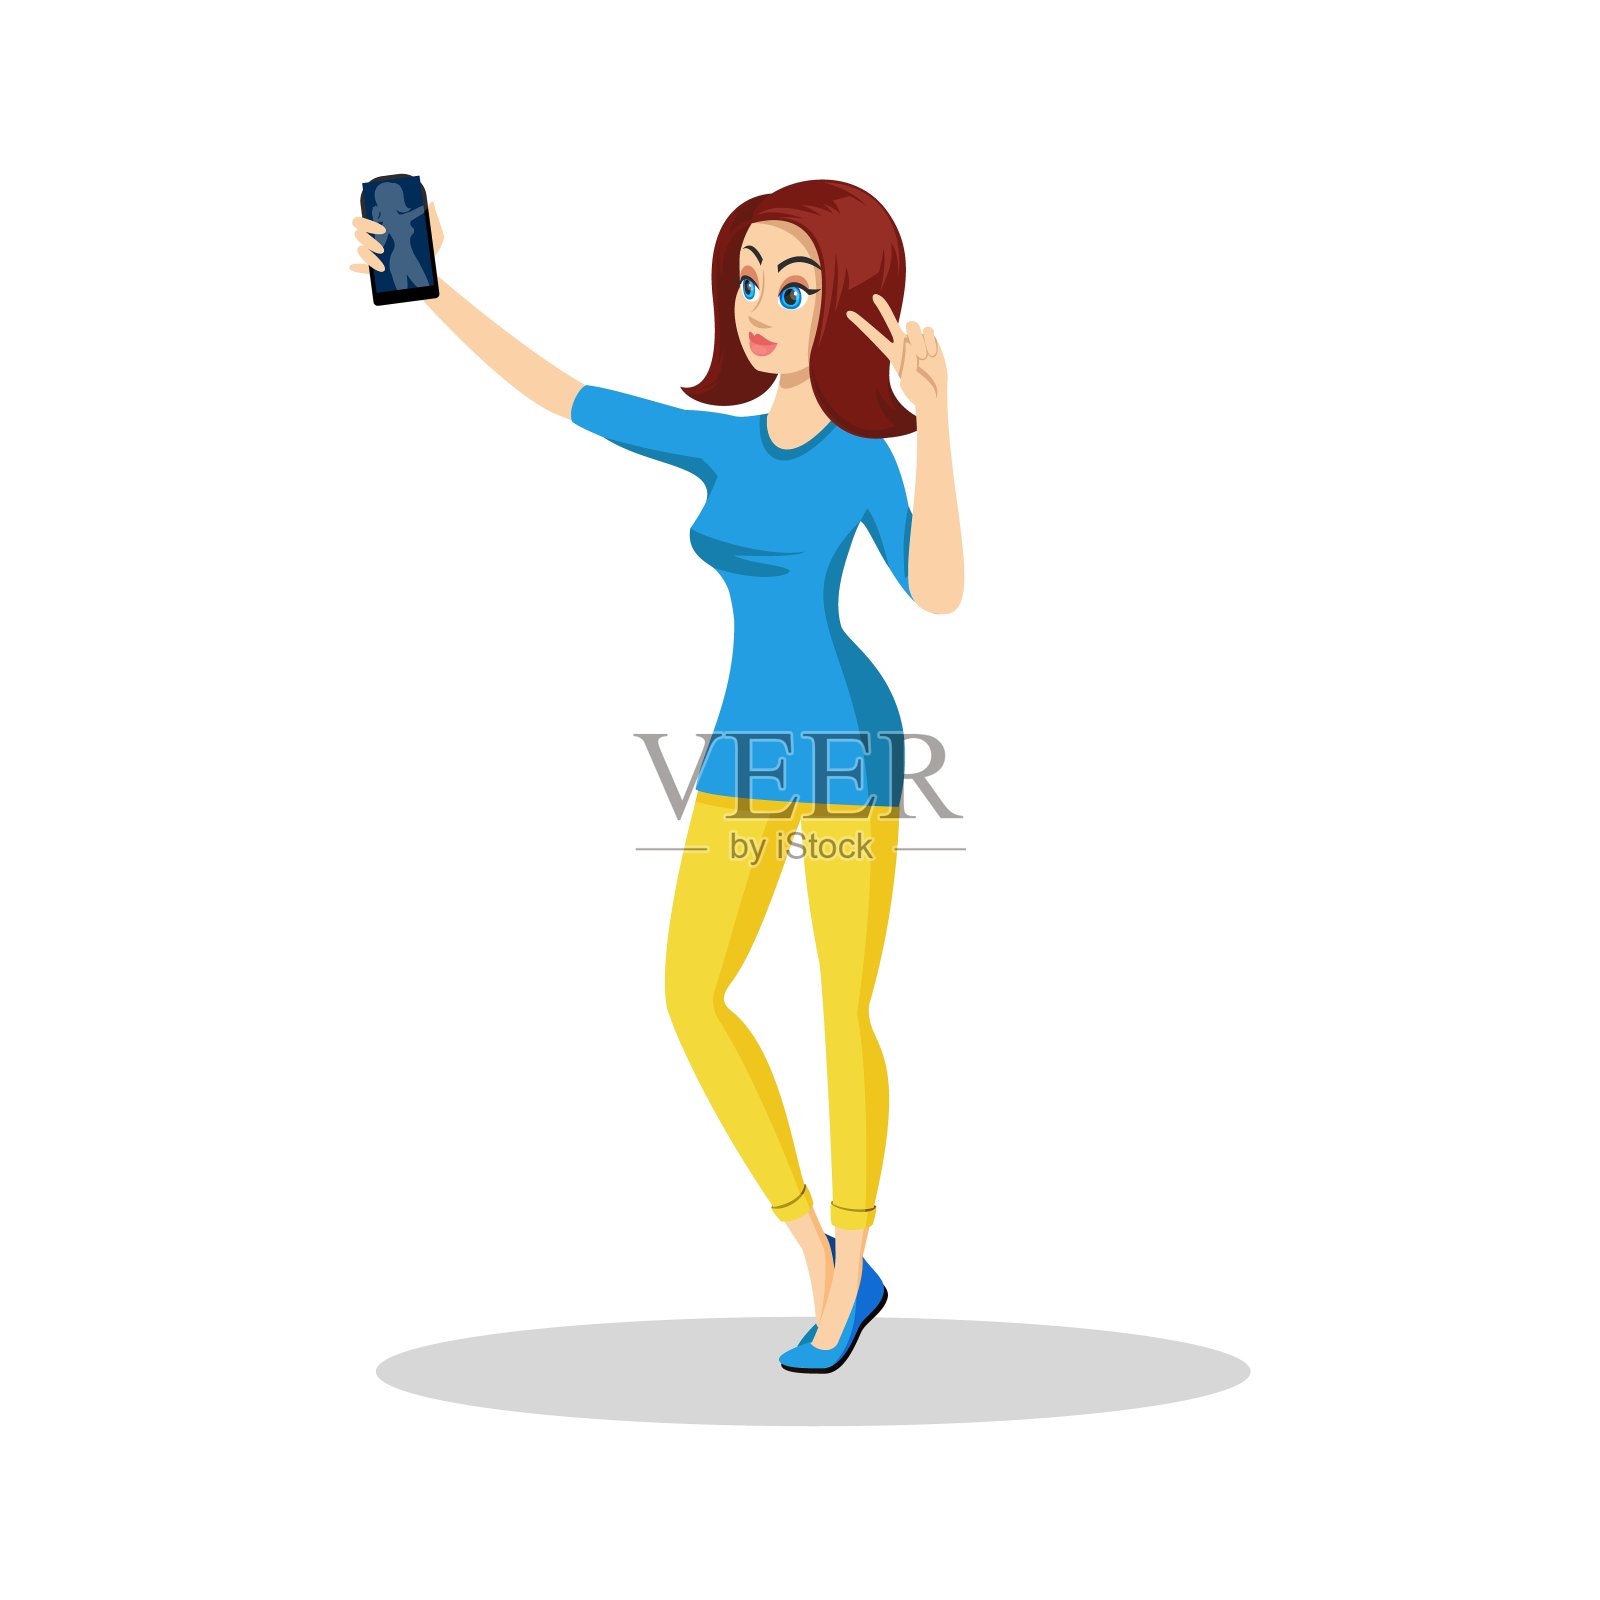 漂亮的黑发女孩穿着蓝色迷你裙和黄色紧身裤与智能手机自拍插画图片素材